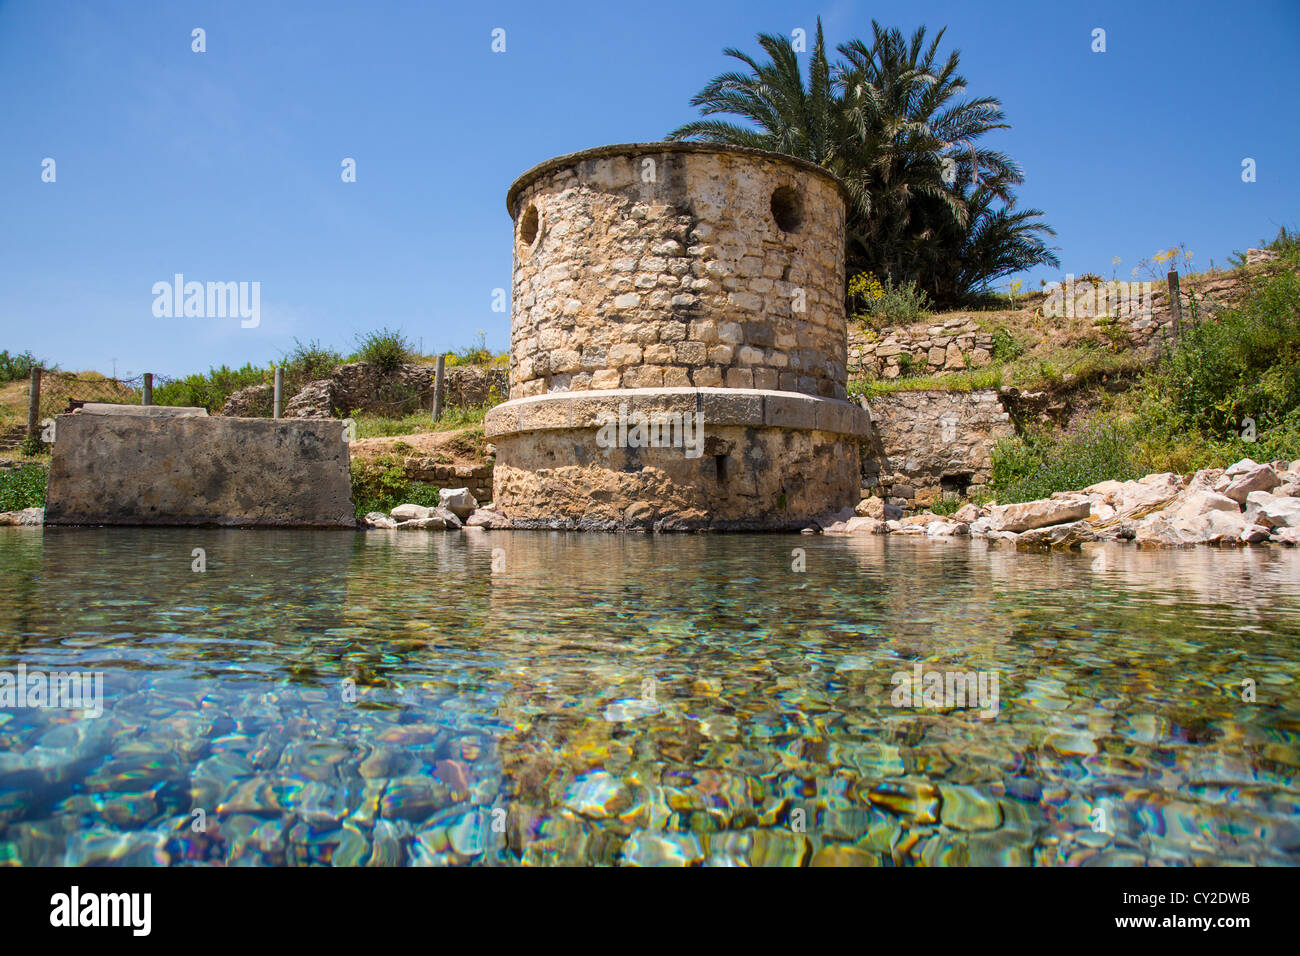 Natürliche Quelle an die römischen Ruinen von Bulla Regia in der Nähe von Jendouba Tunesien Stockfoto